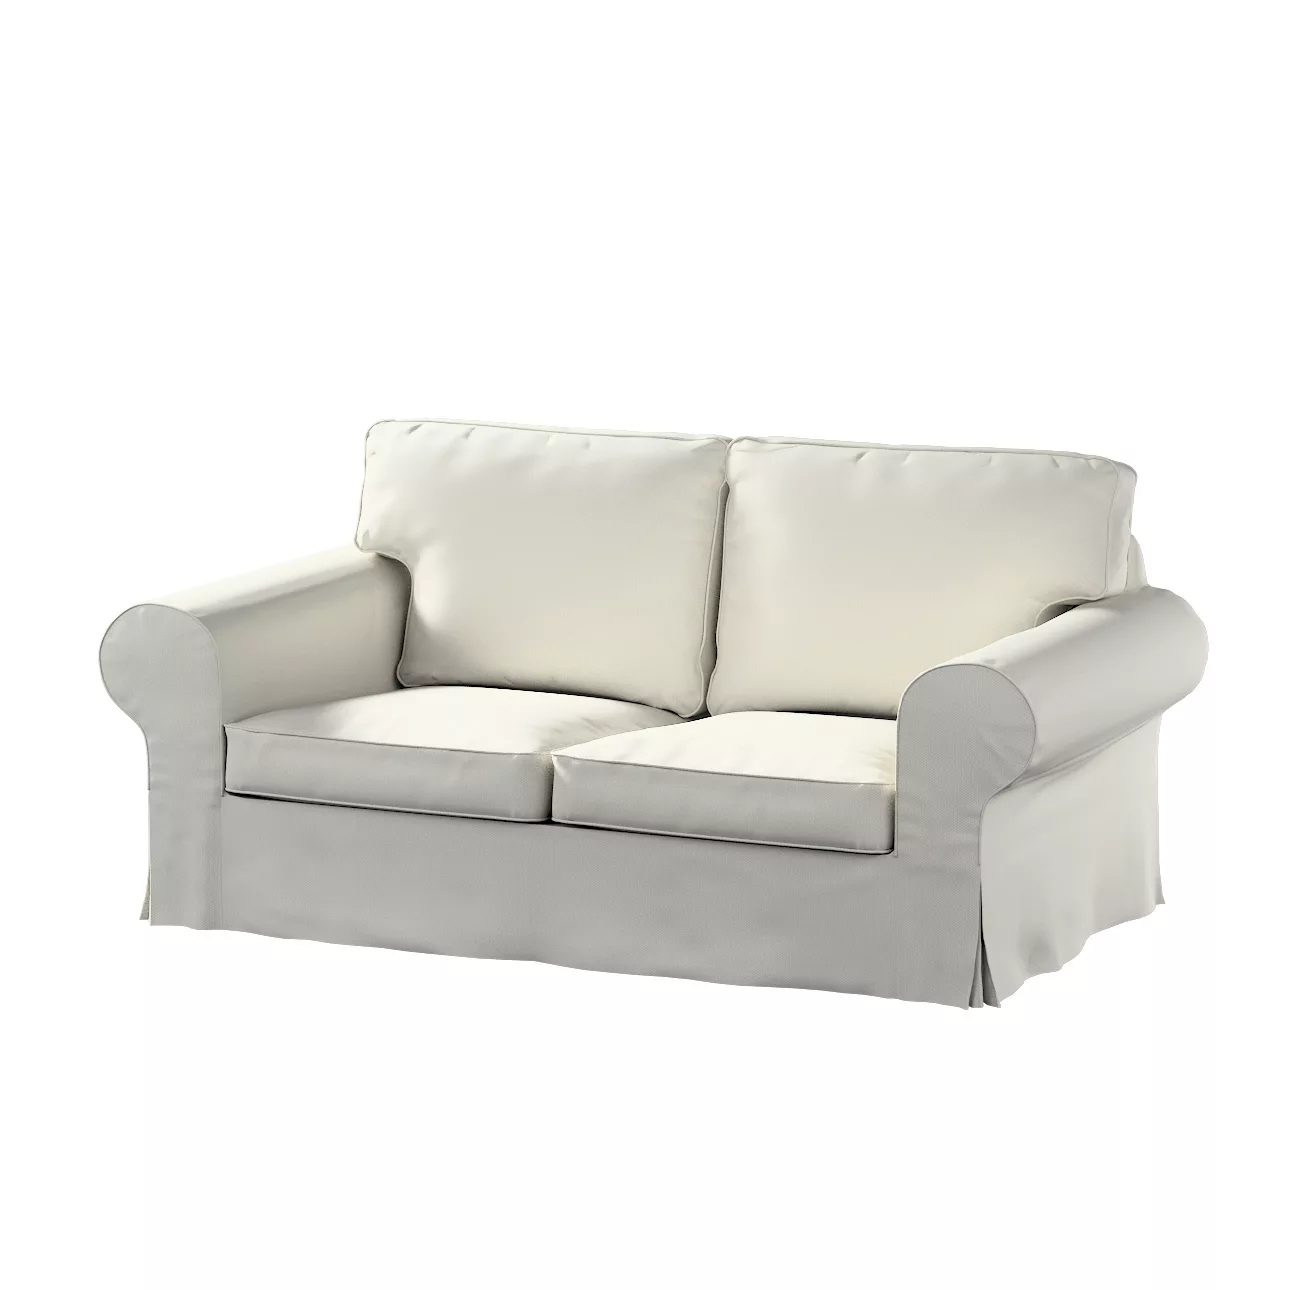 Bezug für Ektorp 2-Sitzer Sofa nicht ausklappbar, hellgrau, Sofabezug für günstig online kaufen